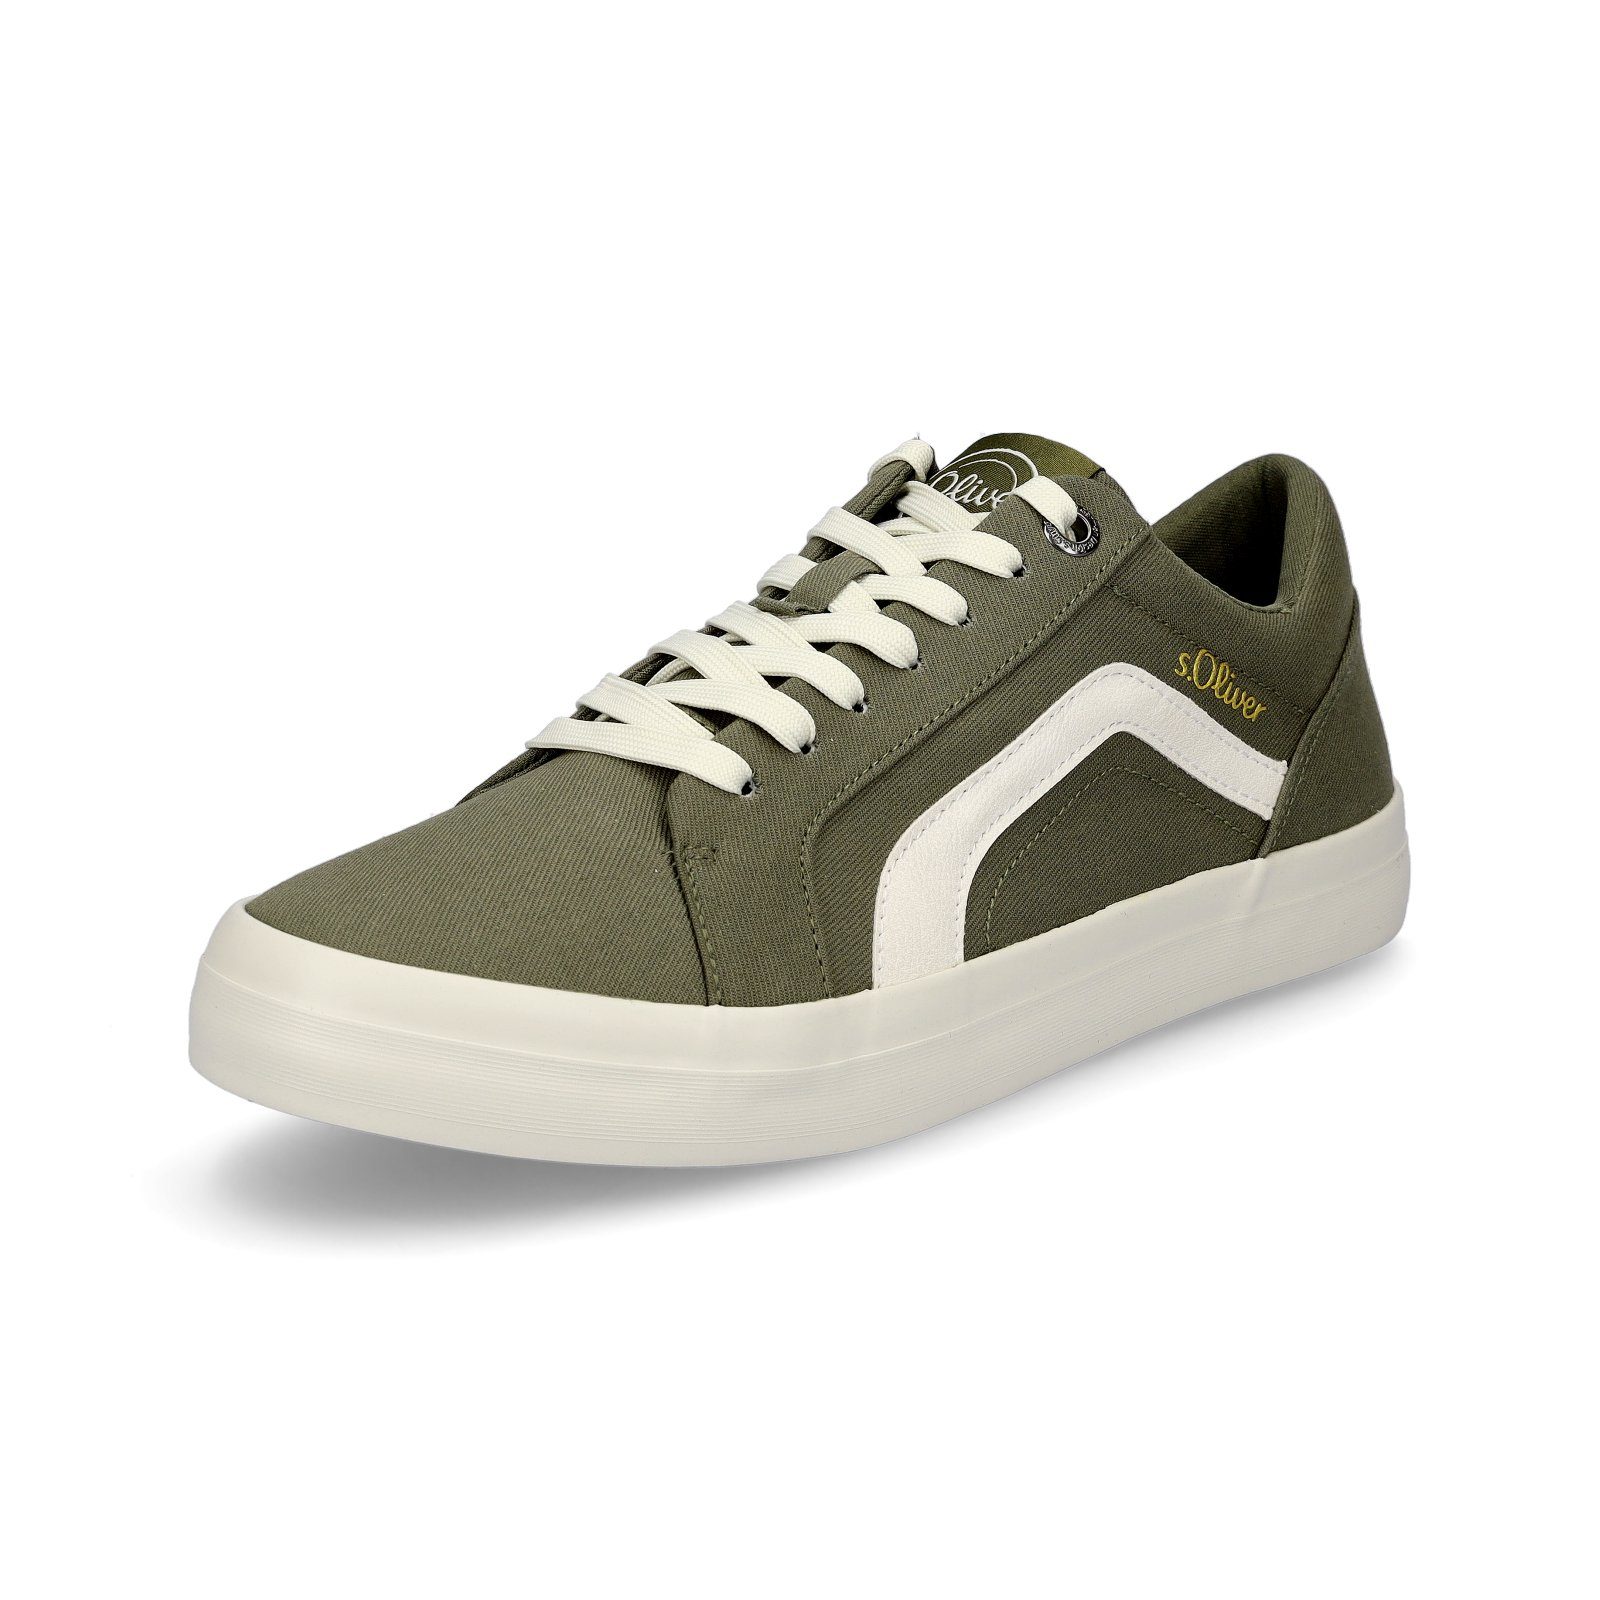 s.Oliver s.Oliver Foam Style, Sneaker Herren Soft und Fußbett jung Sneaker, für khaki casual grün alt, Freizeitschuh